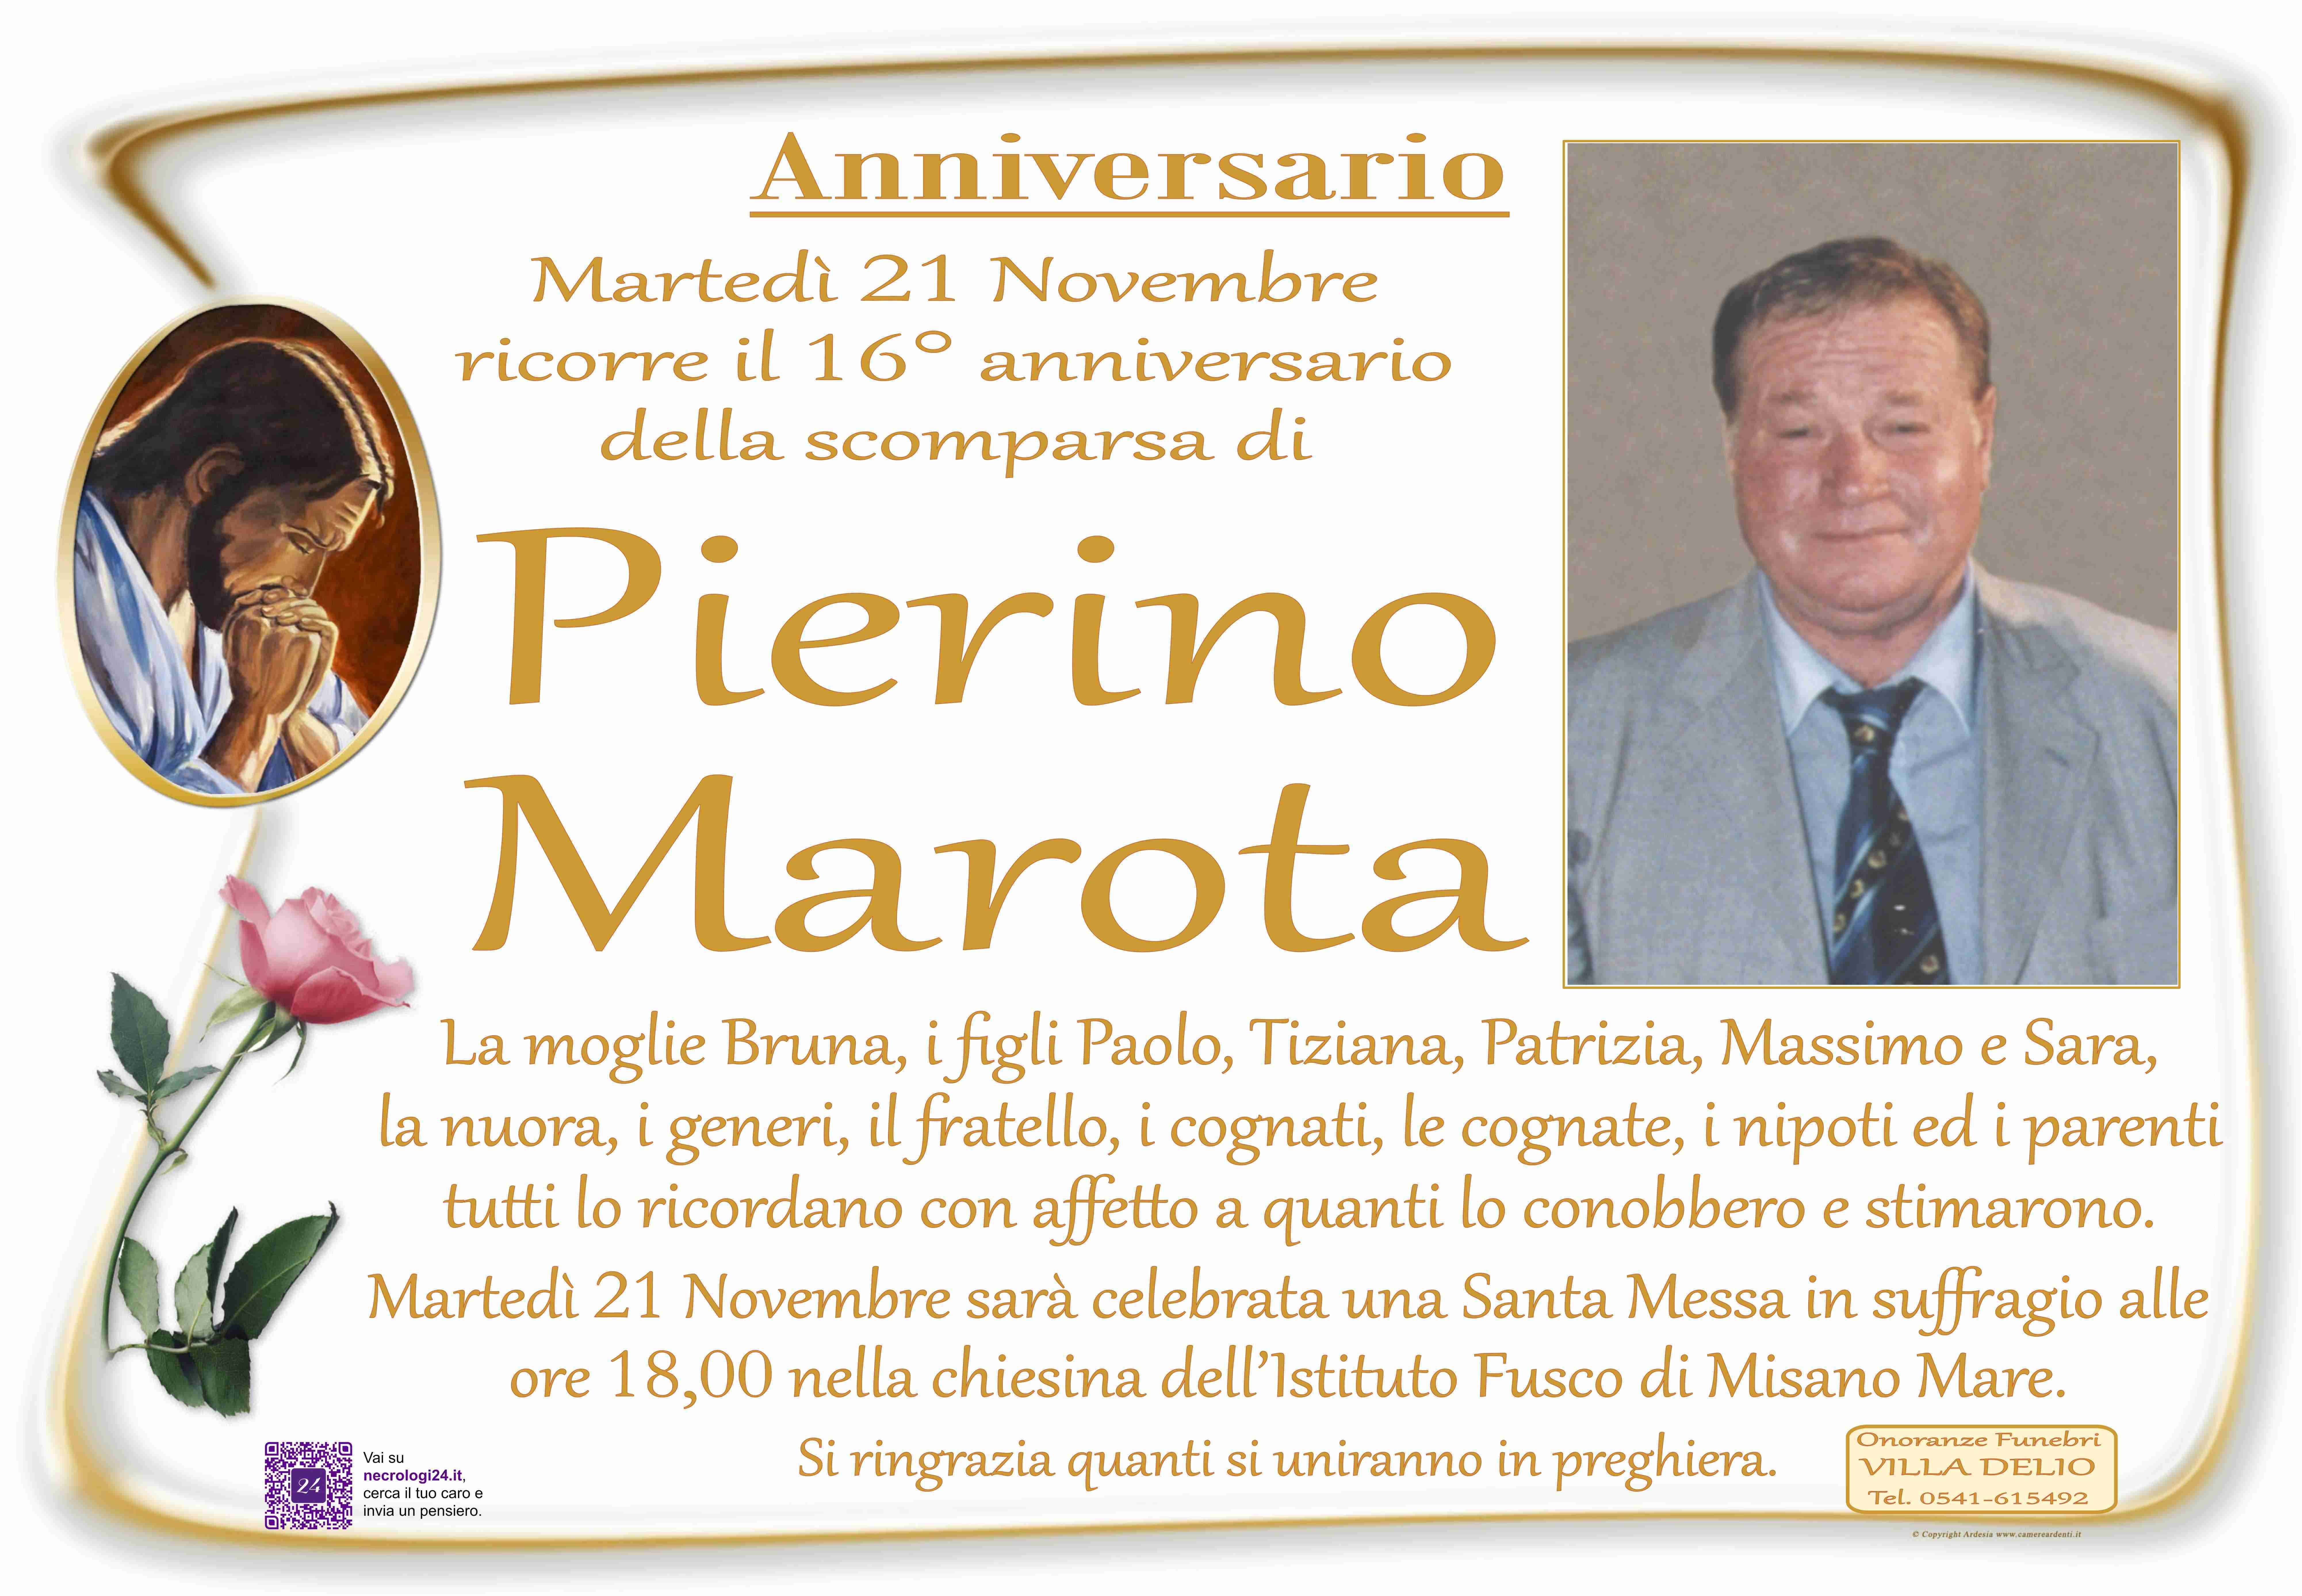 Pierino Marota